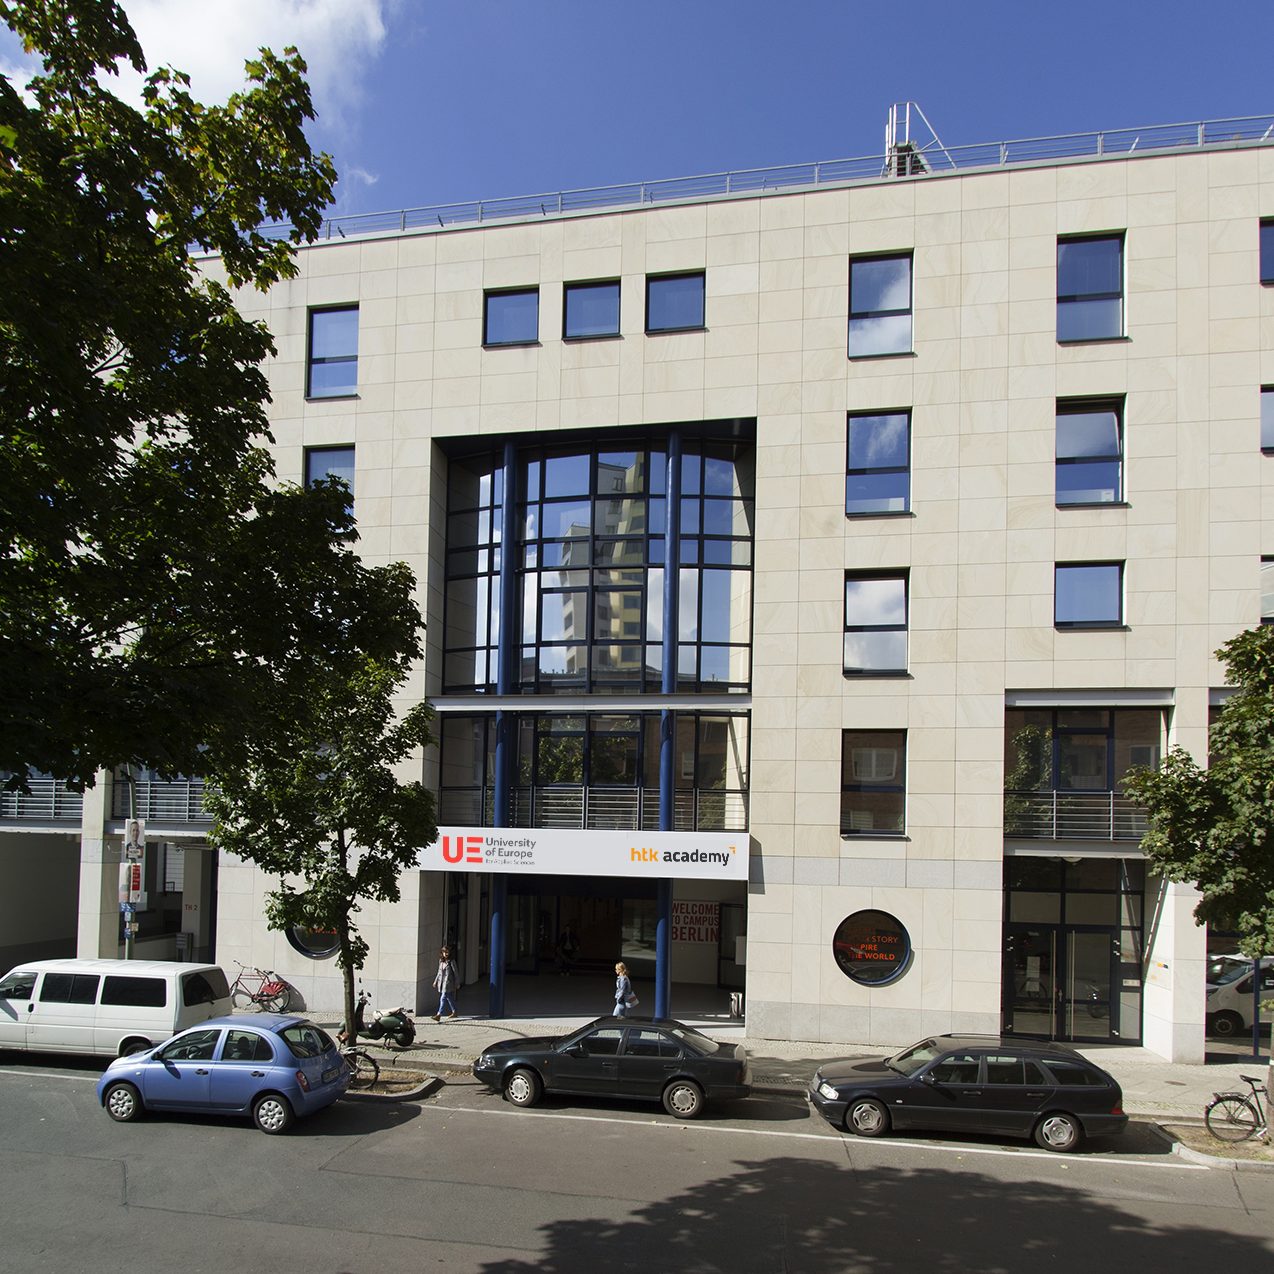 UE Berlin Campus